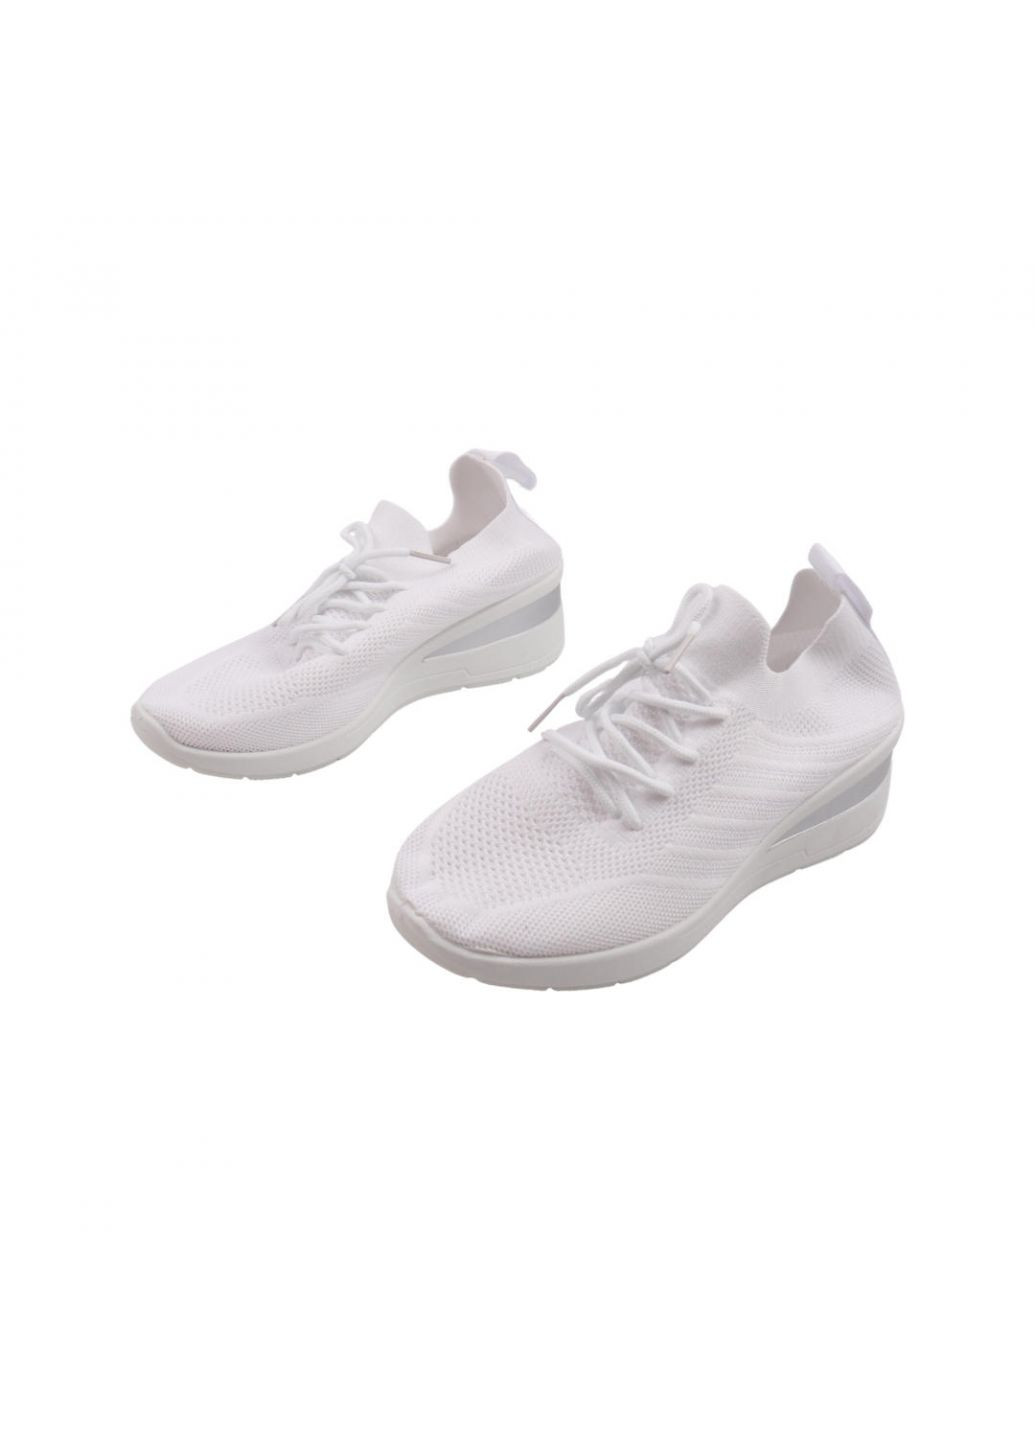 Білі кросівки жіночі білі текстиль Fashion 26-22LK